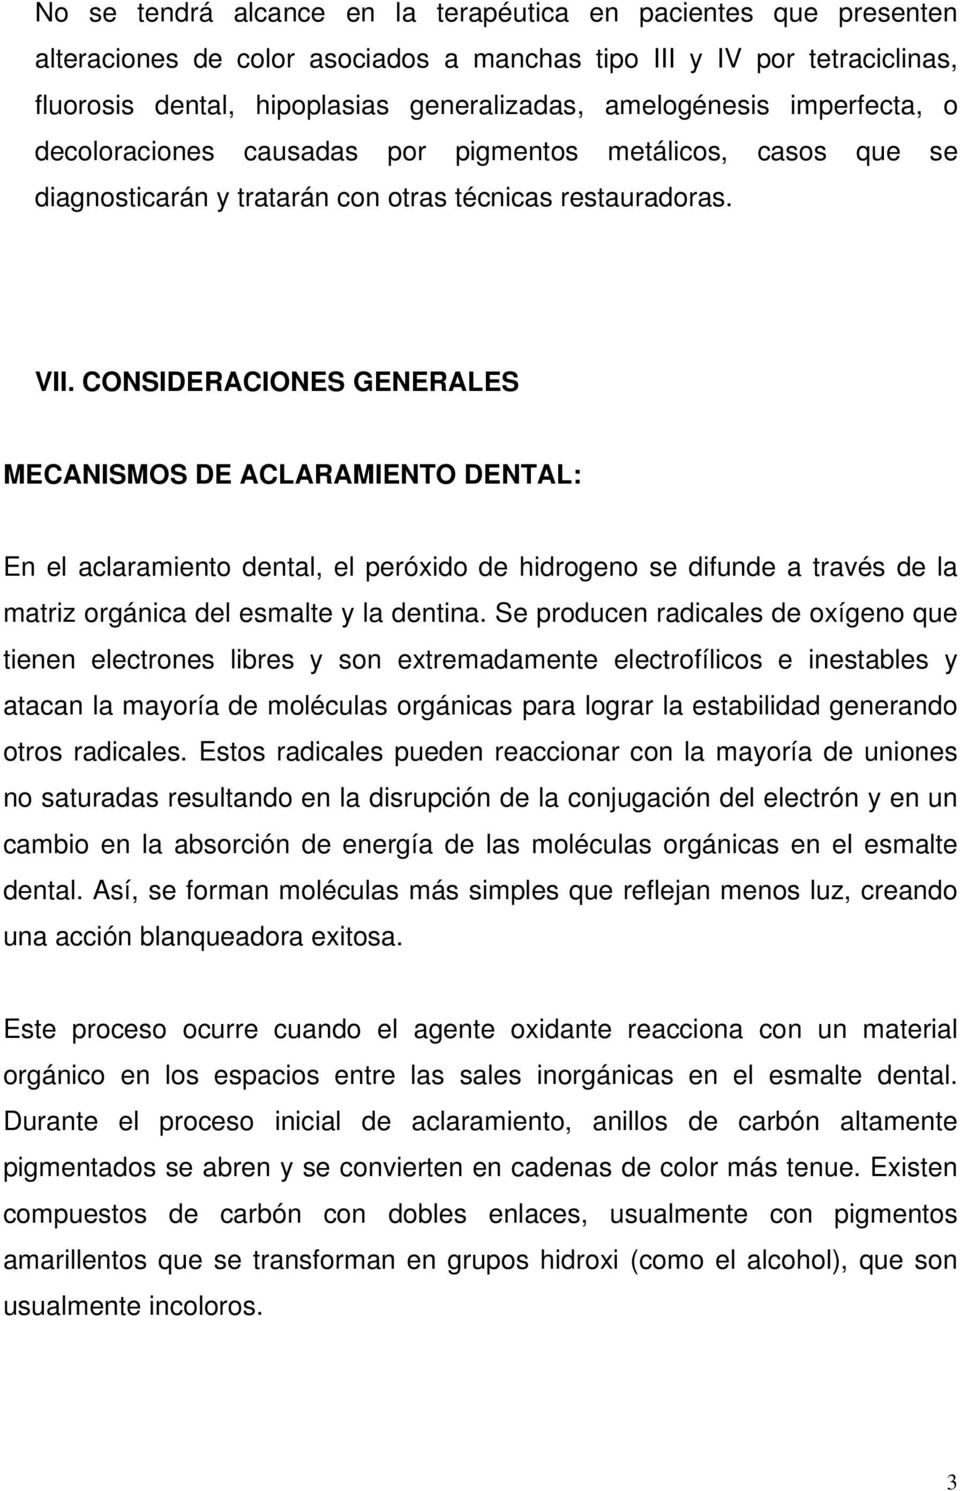 CONSIDERACIONES GENERALES MECANISMOS DE ACLARAMIENTO DENTAL: En el aclaramiento dental, el peróxido de hidrogeno se difunde a través de la matriz orgánica del esmalte y la dentina.